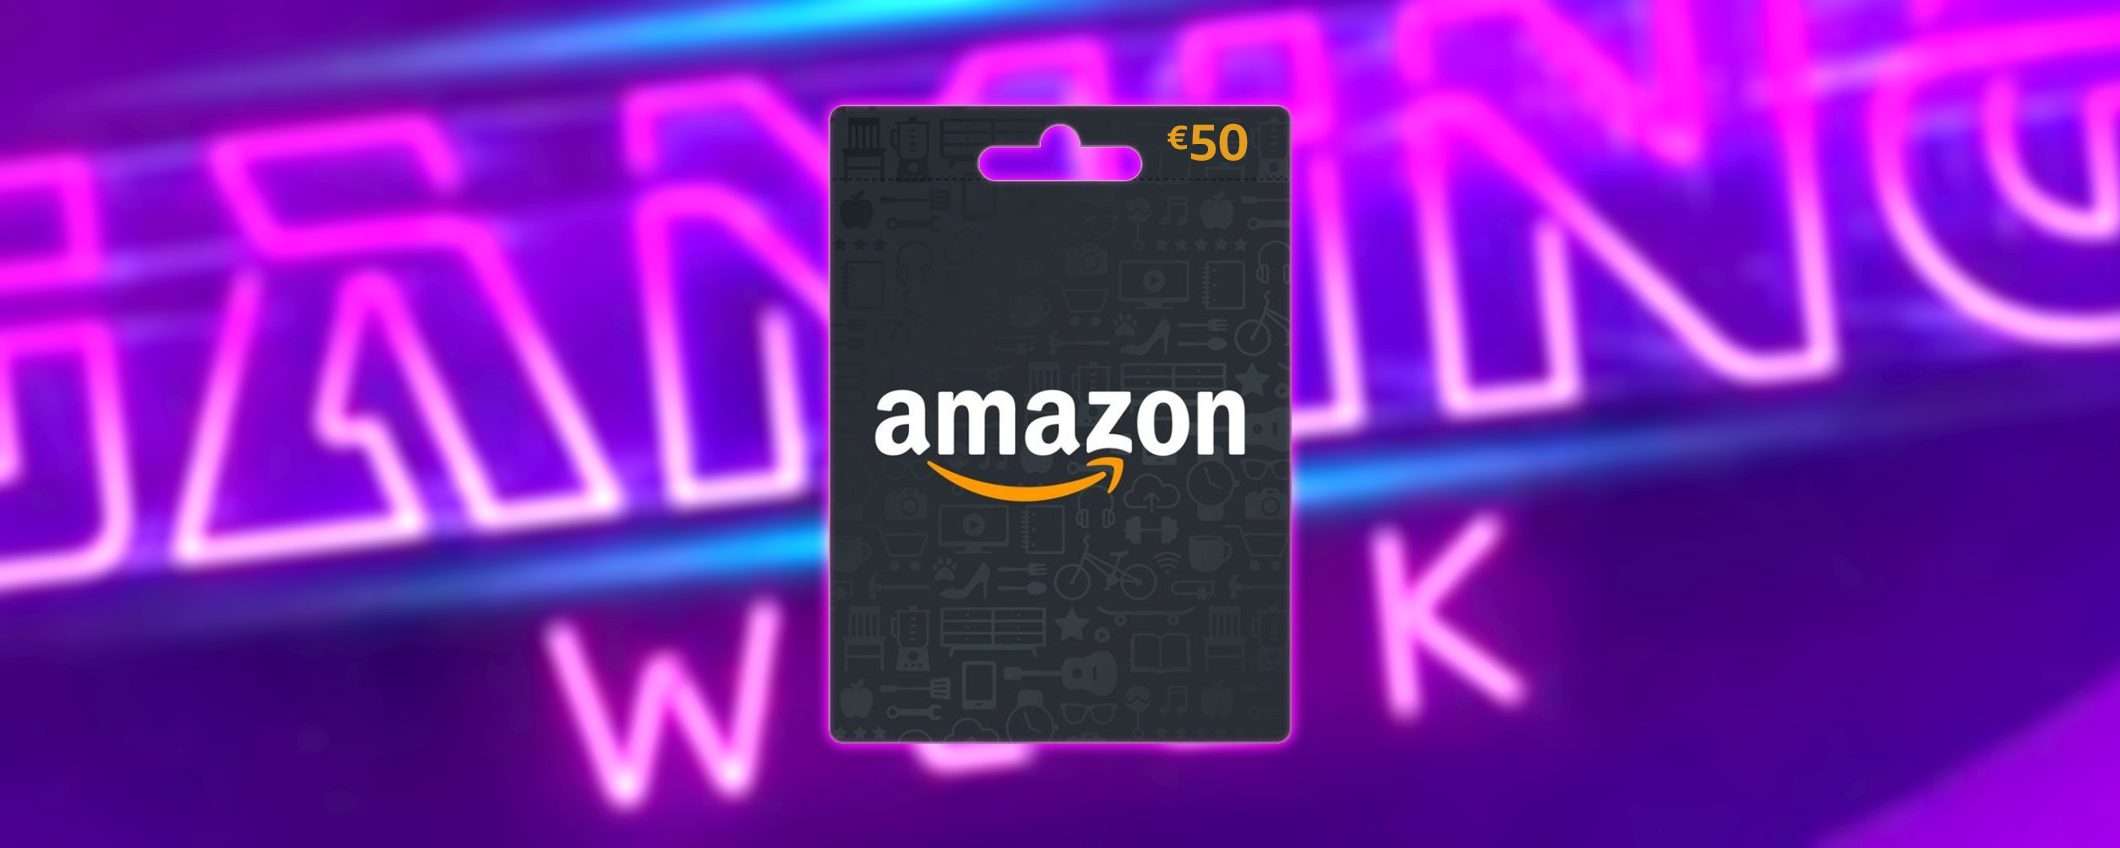 Vinci un buono Amazon da 50€ con la Gaming Week